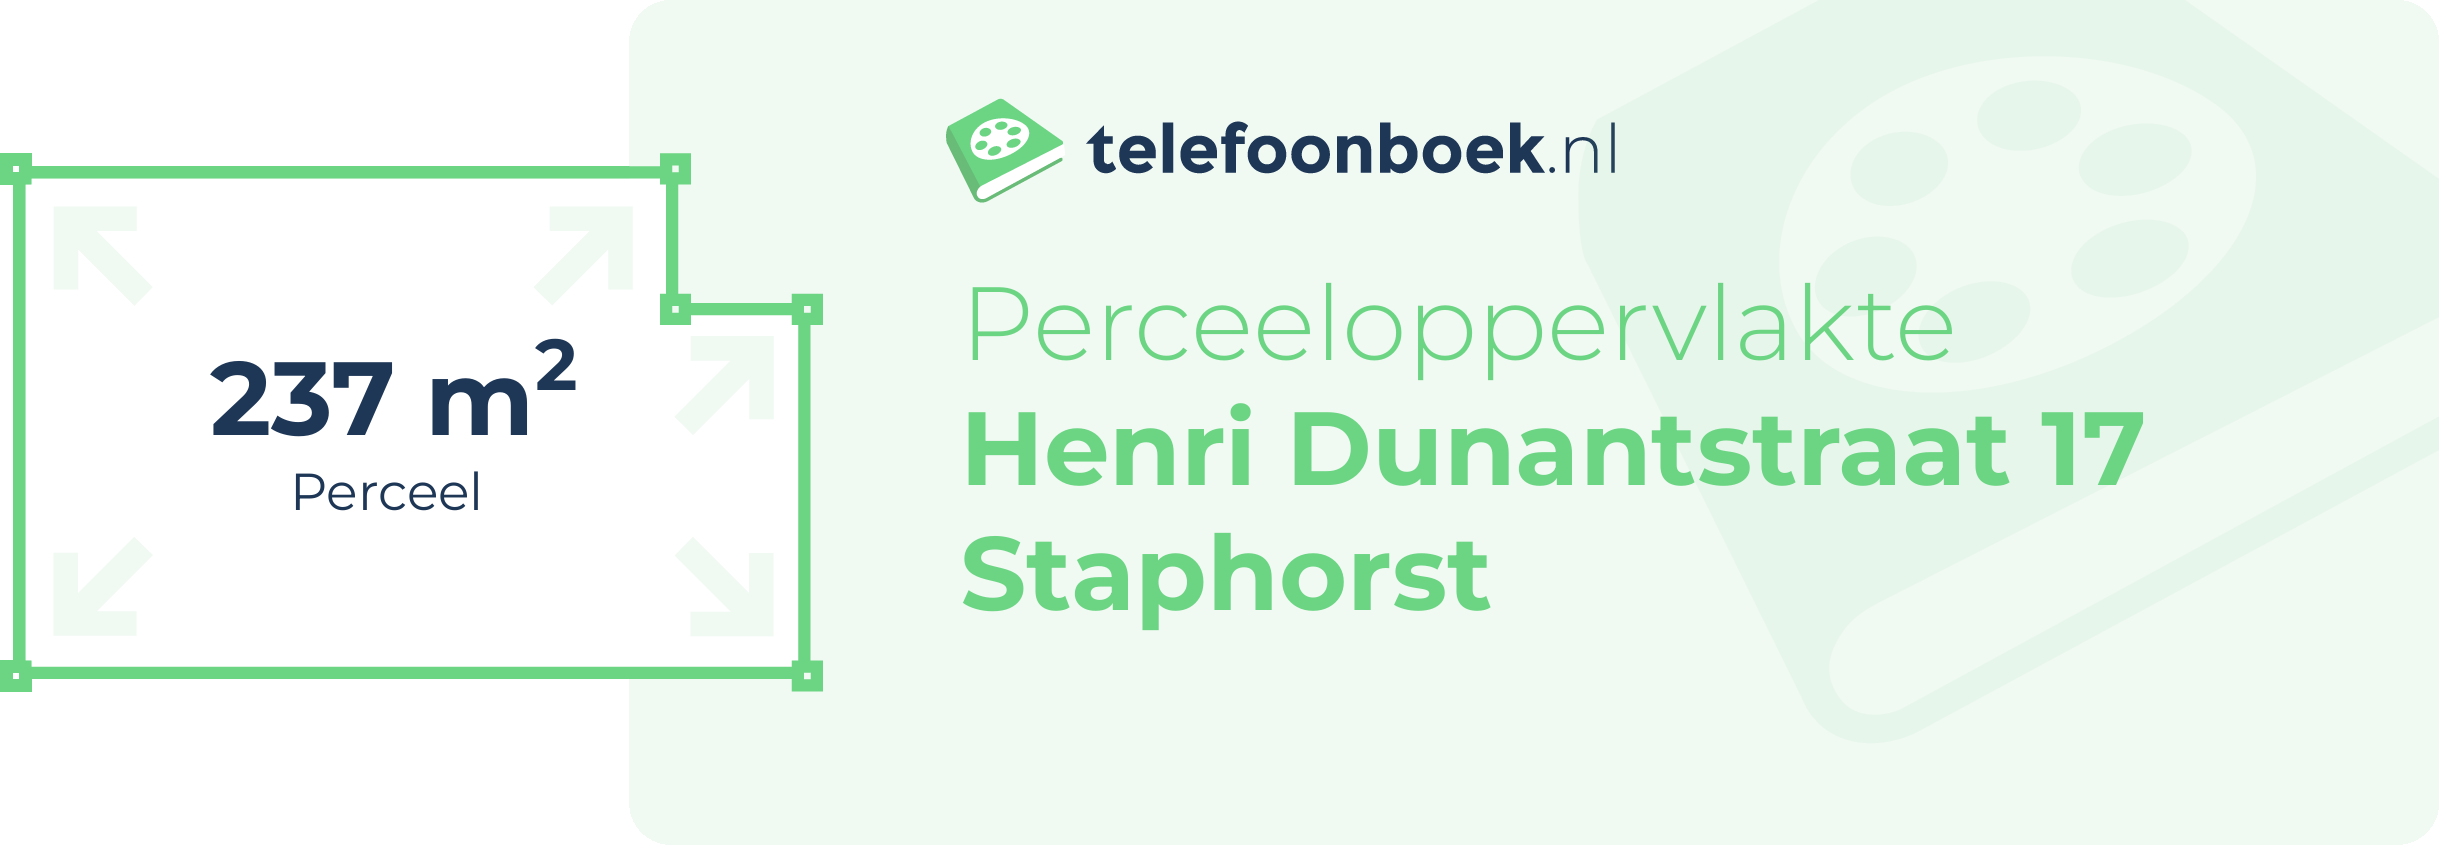 Perceeloppervlakte Henri Dunantstraat 17 Staphorst